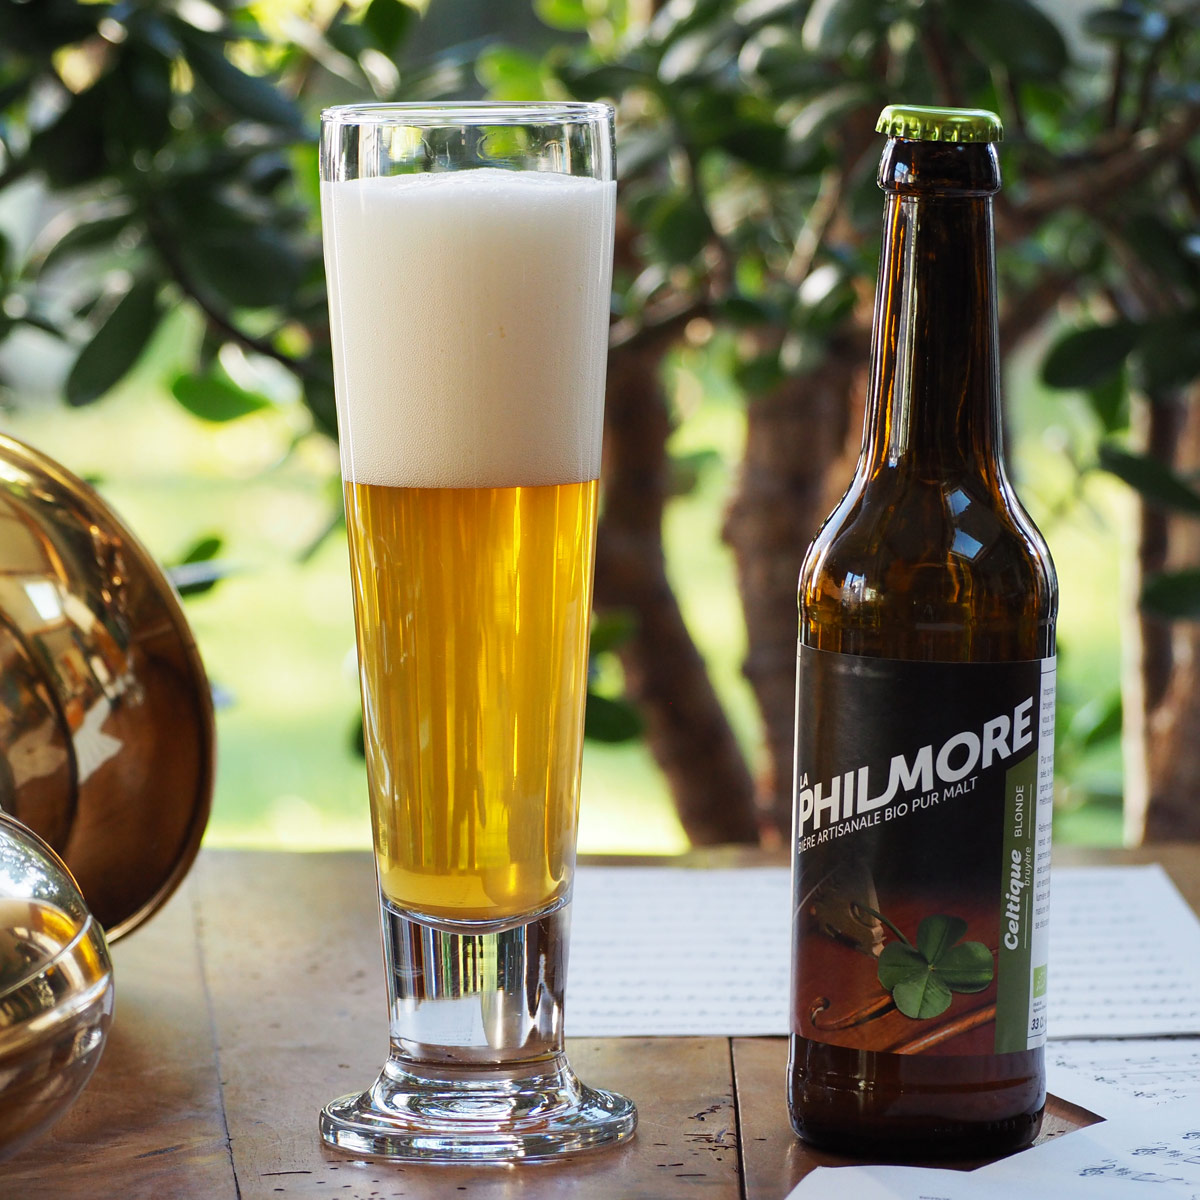 La Philmore Celtique – bière artisanale bio pur malt